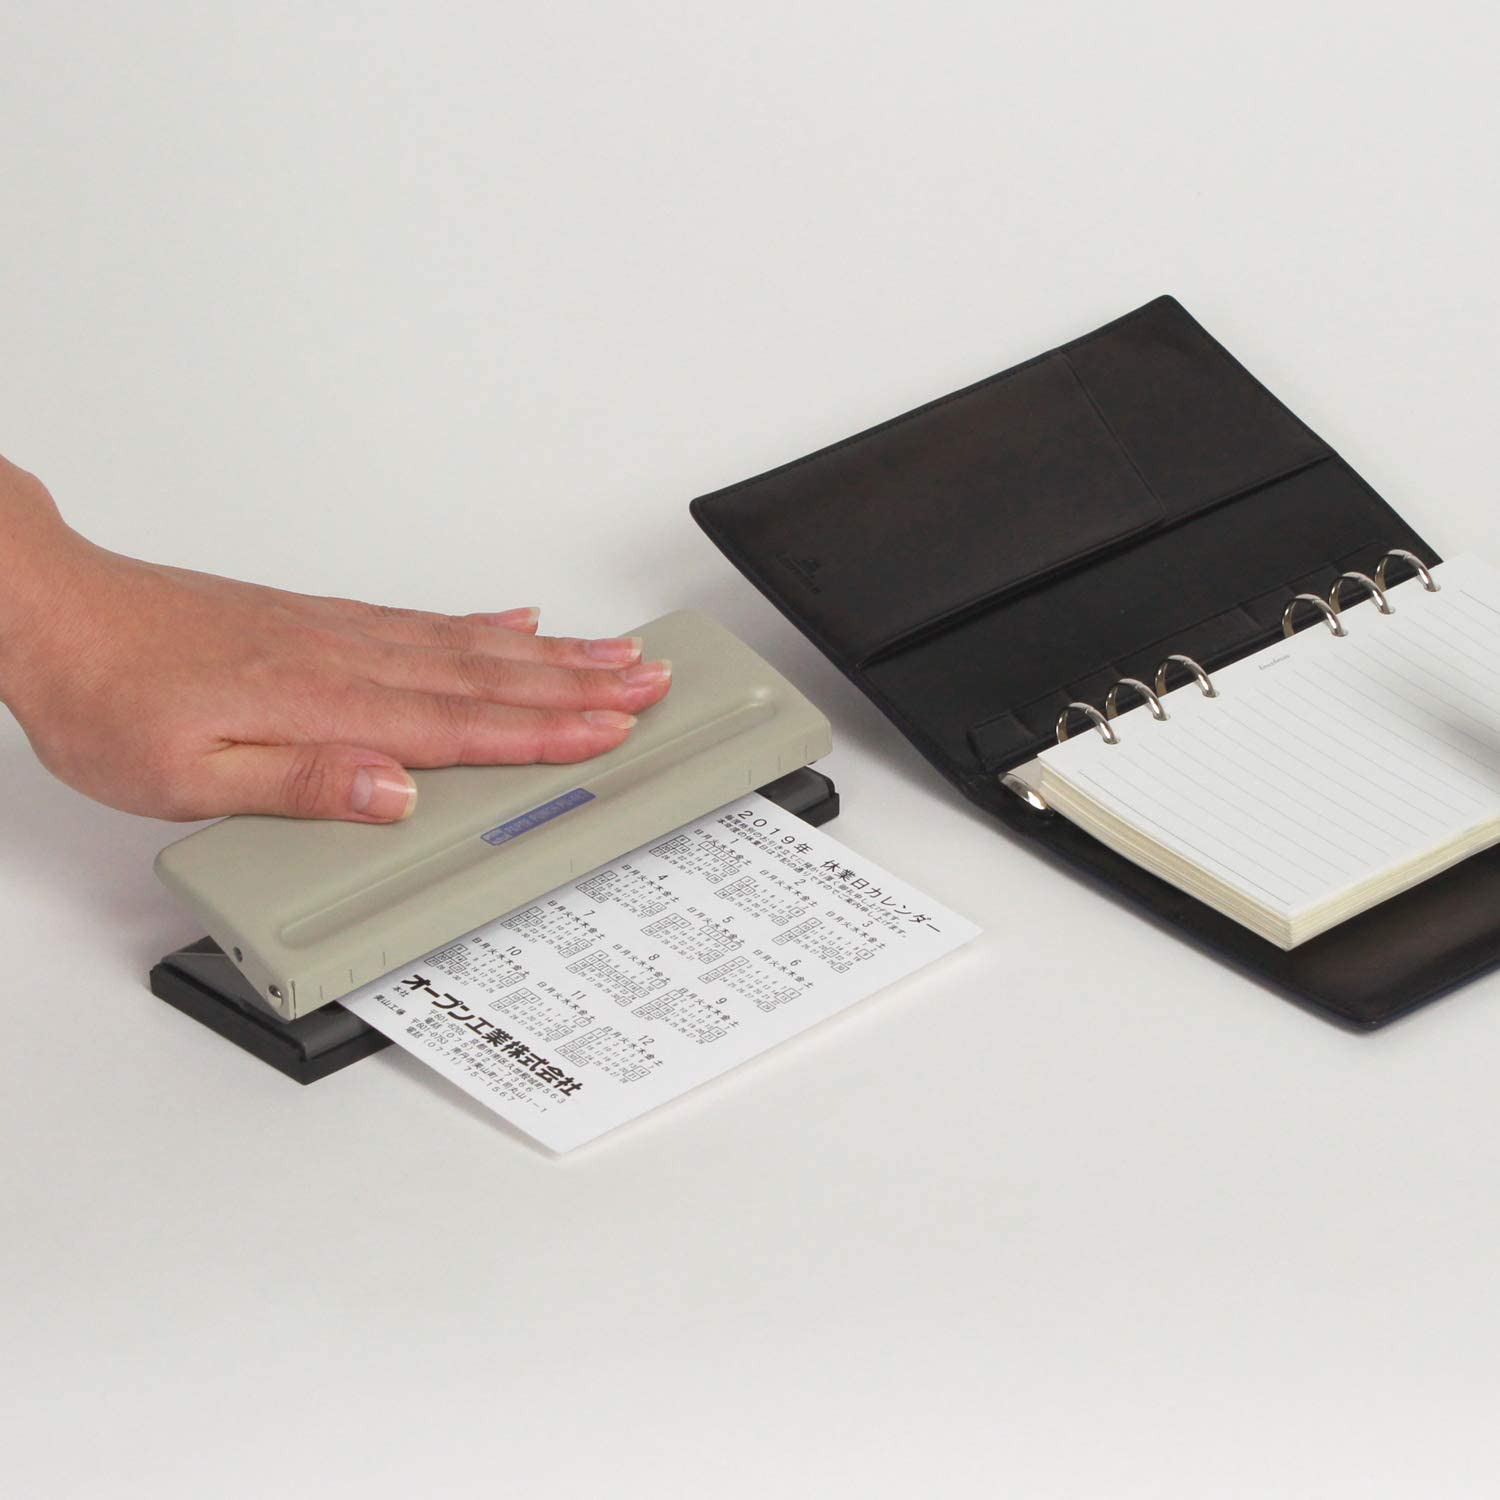 ルーズリーフ・手帳用タイプはノートや資料をまとめる際に便利